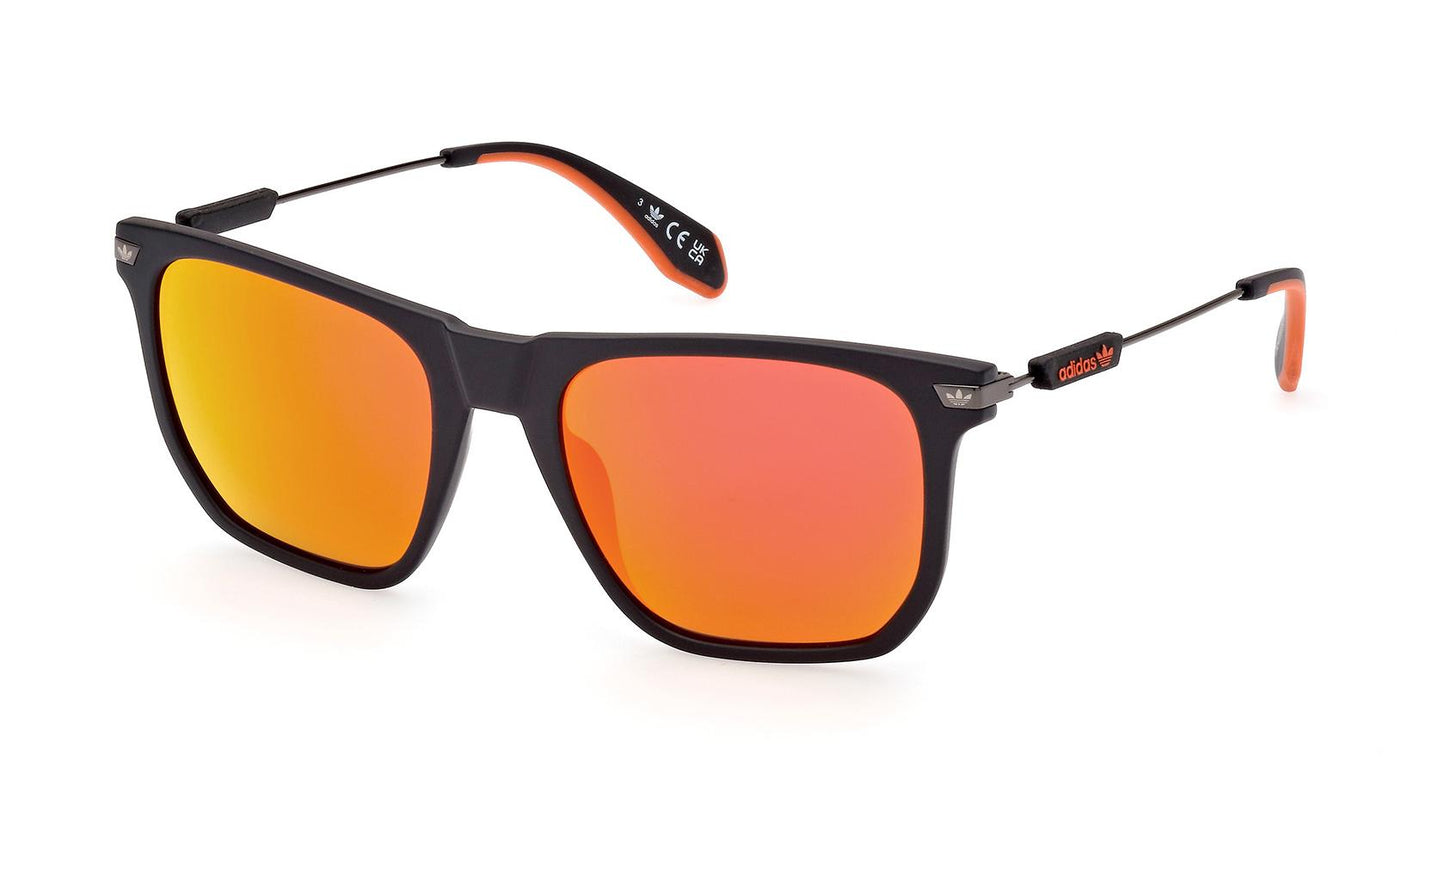 Adidas Originals Sunglasses OR0081 20L